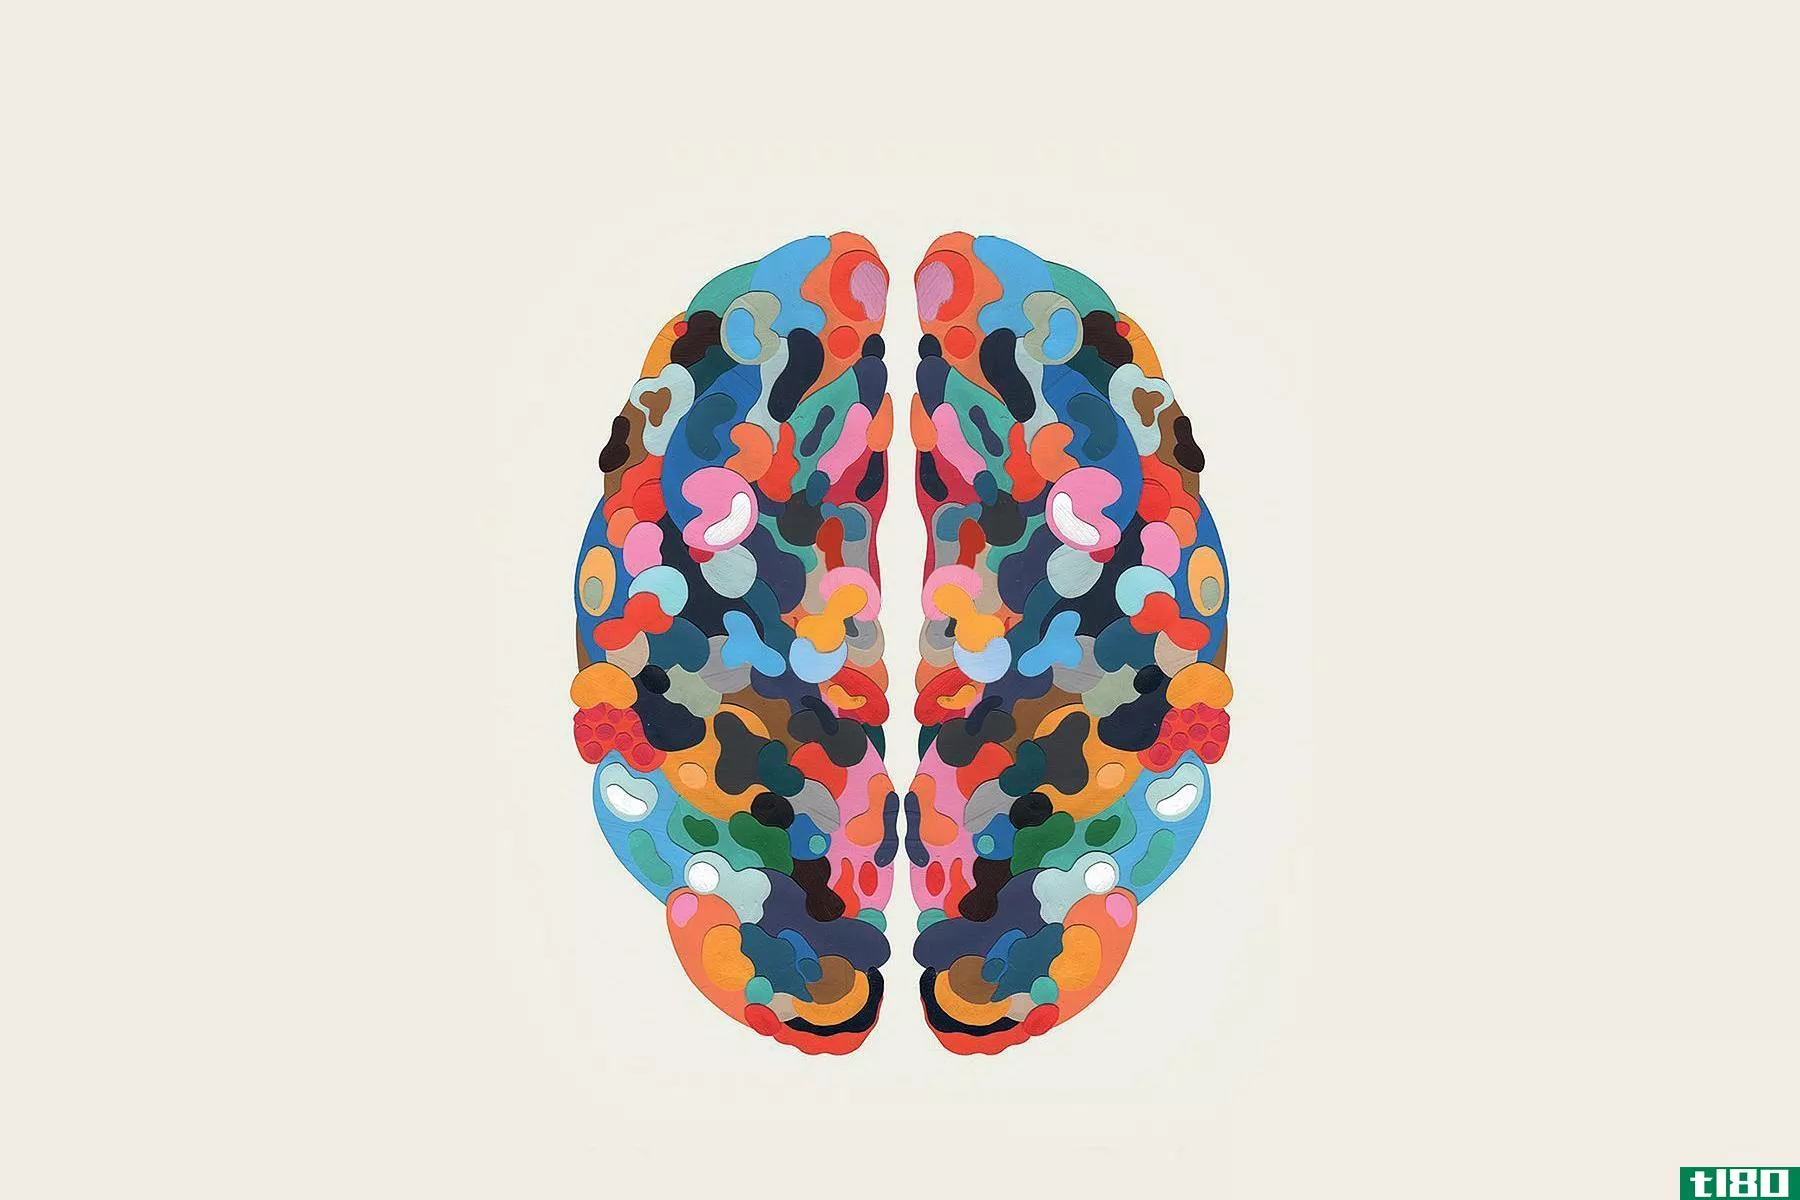 神经学家大卫·伊格尔曼和作曲家安东尼·勃兰特解释了创造力是如何工作的